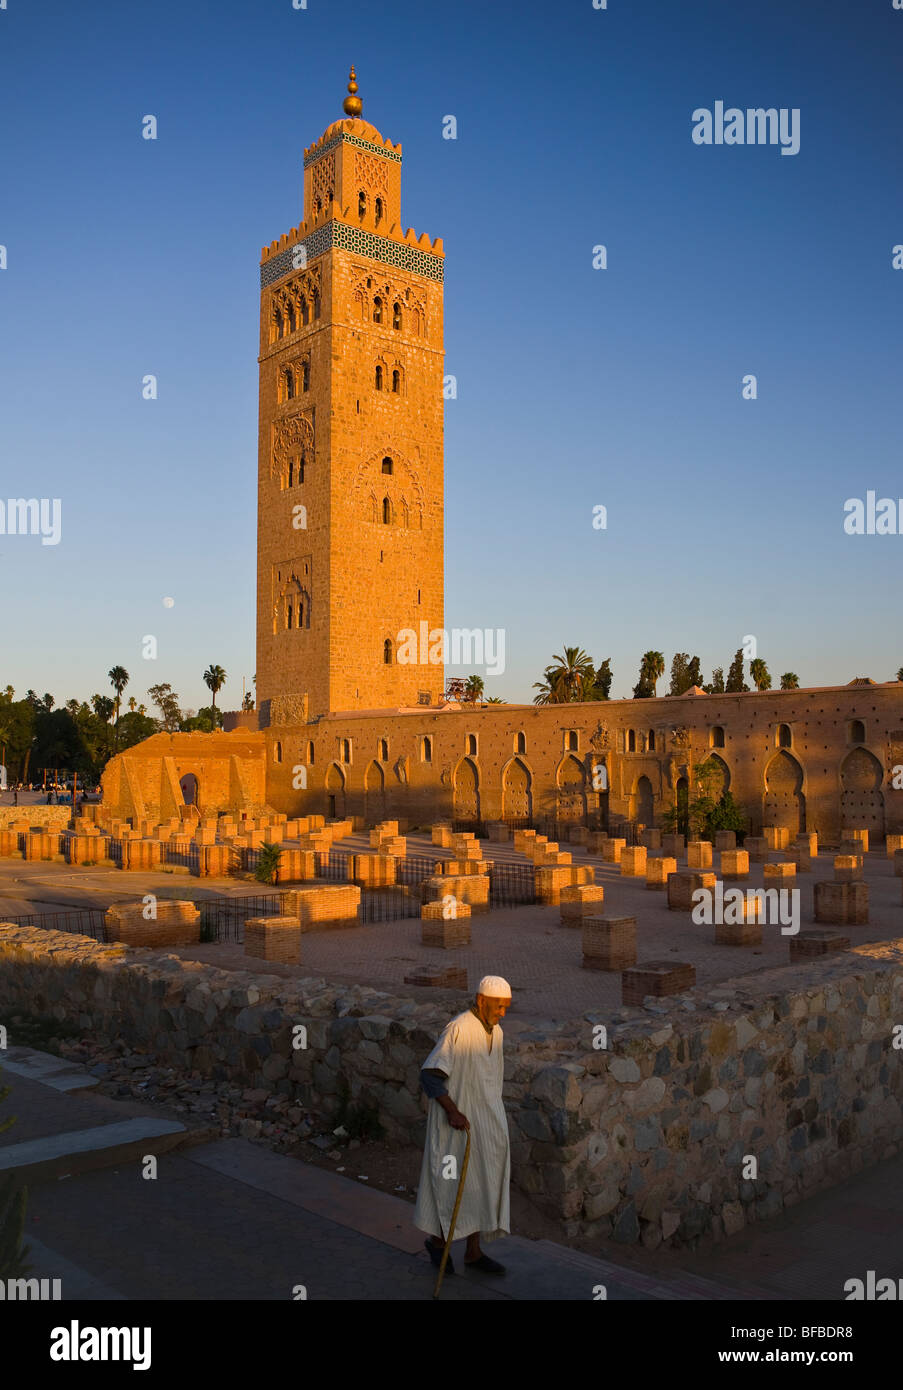 Marrakech, Maroc - Mosquée de la Koutoubia, et son minaret mauresque, construit au 12ème siècle. Banque D'Images